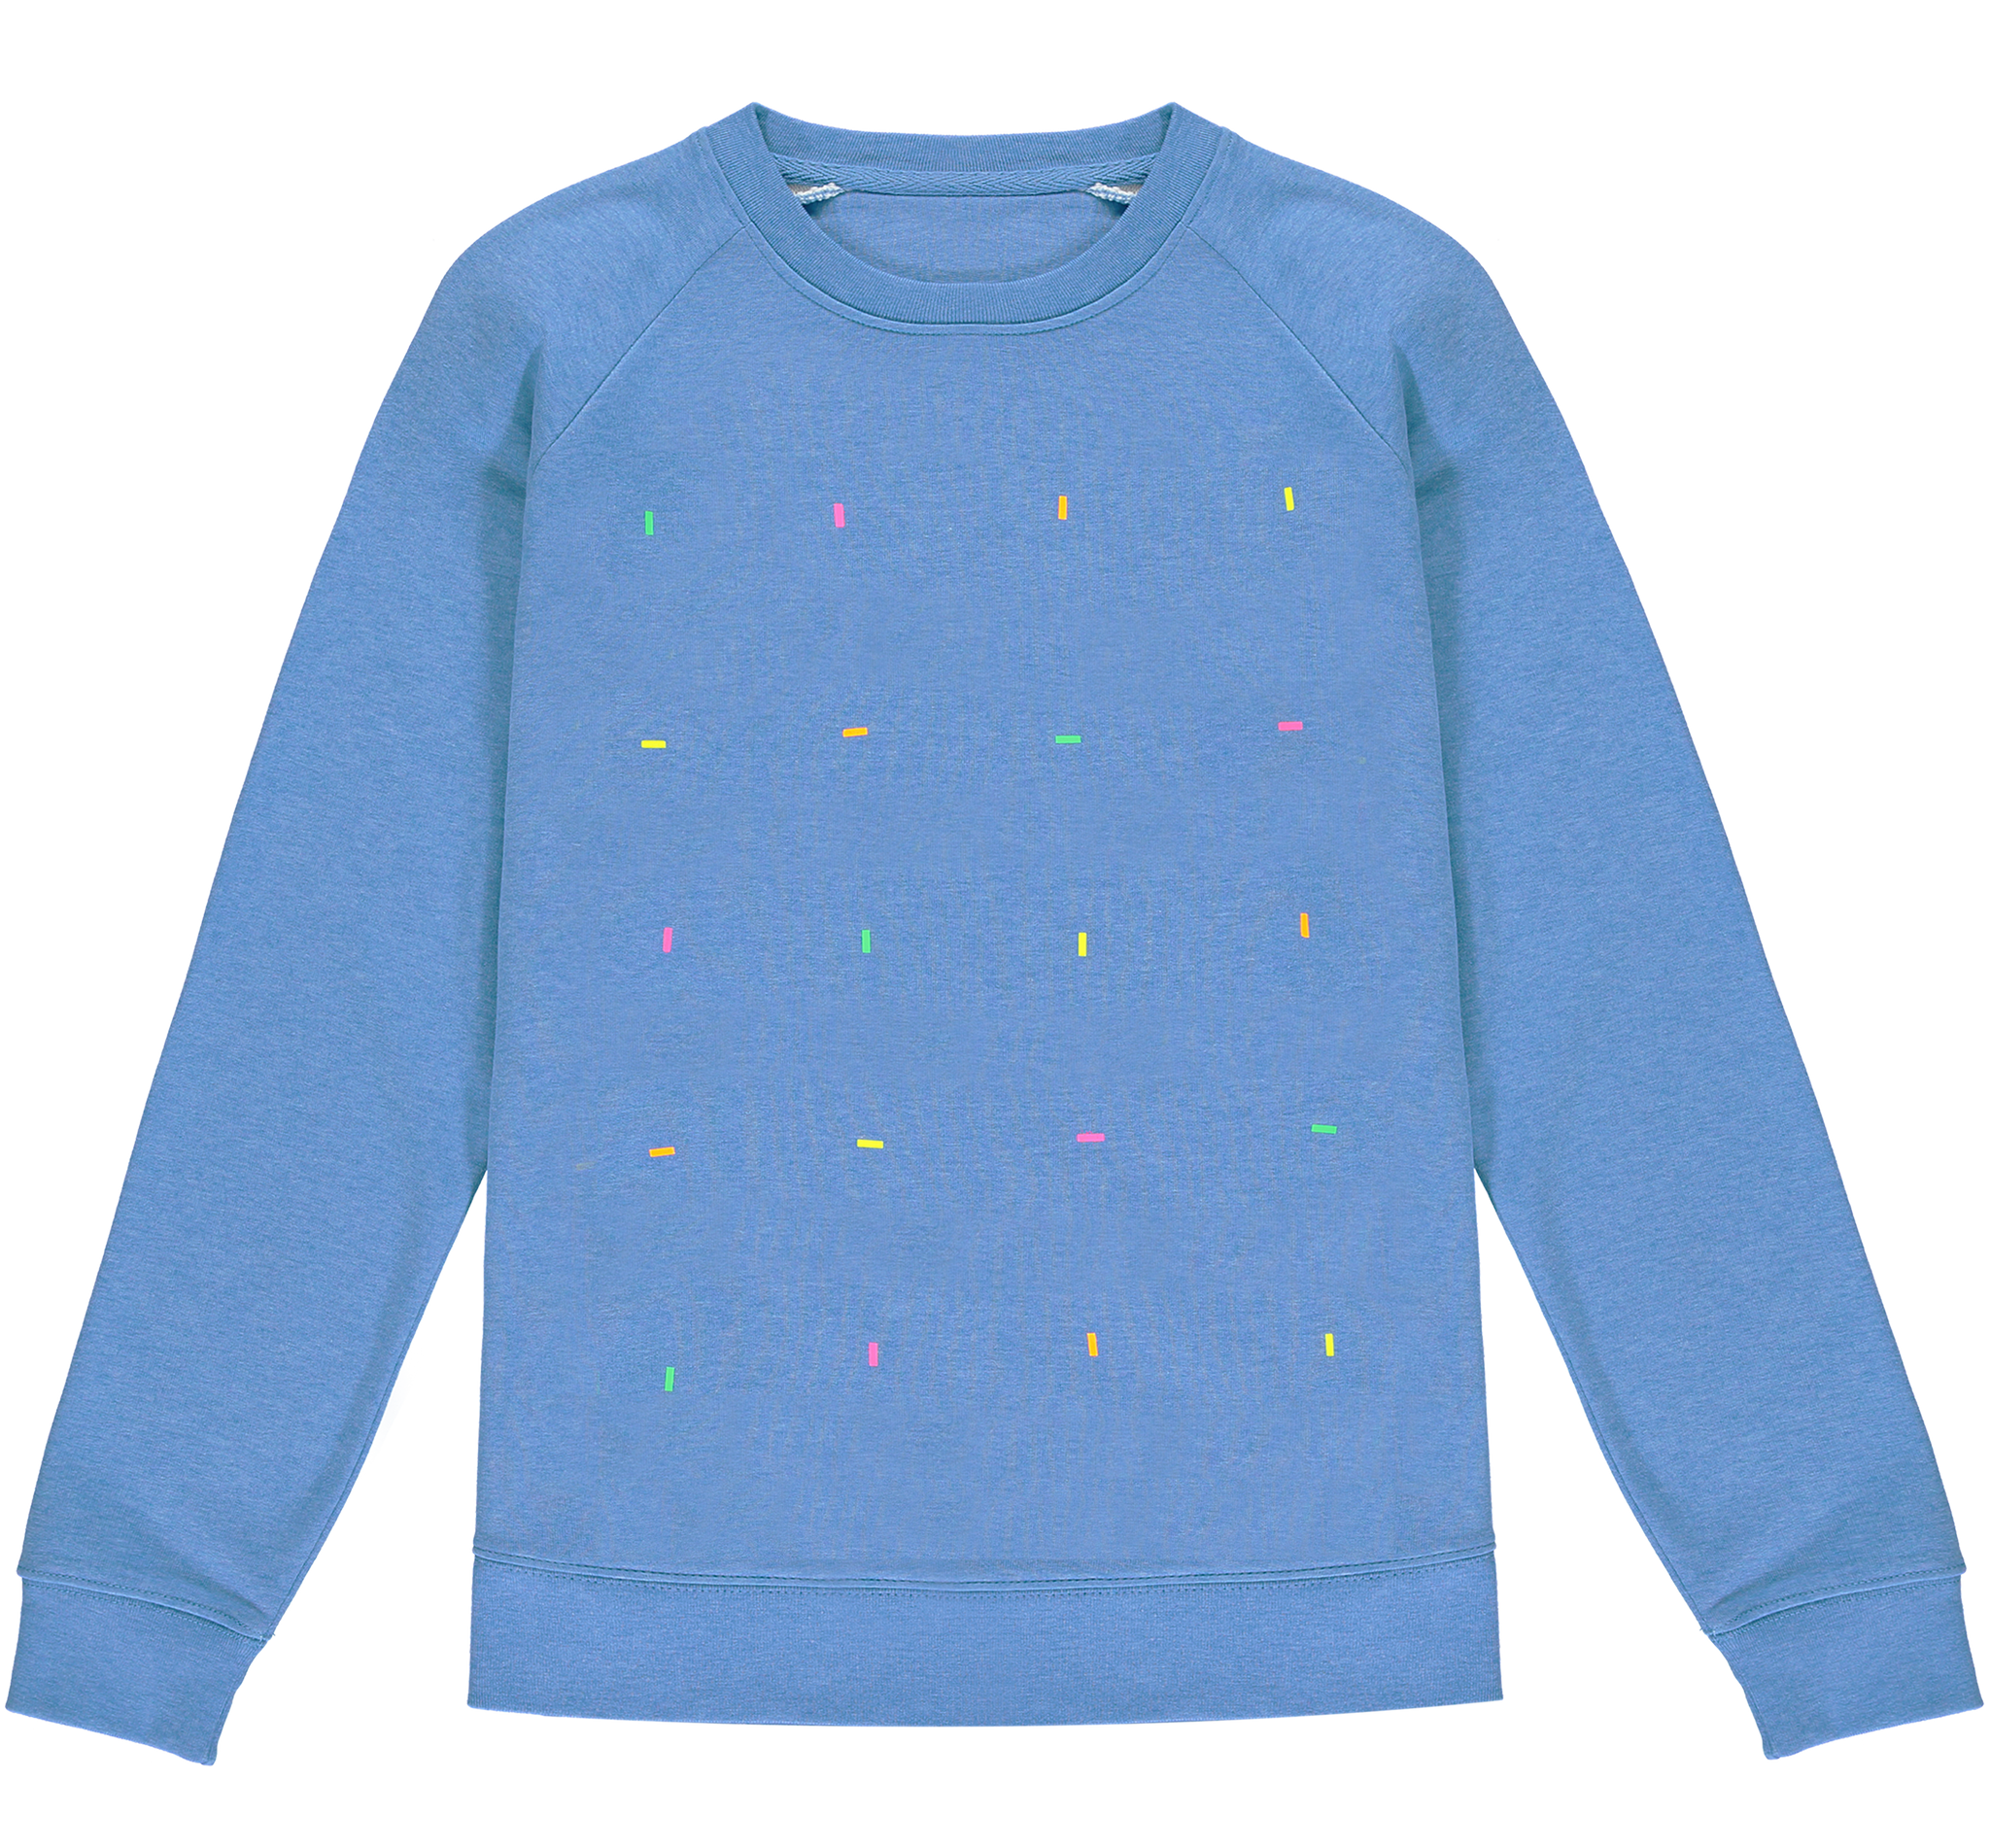 Fluoro Heather Blue Sweatshirt